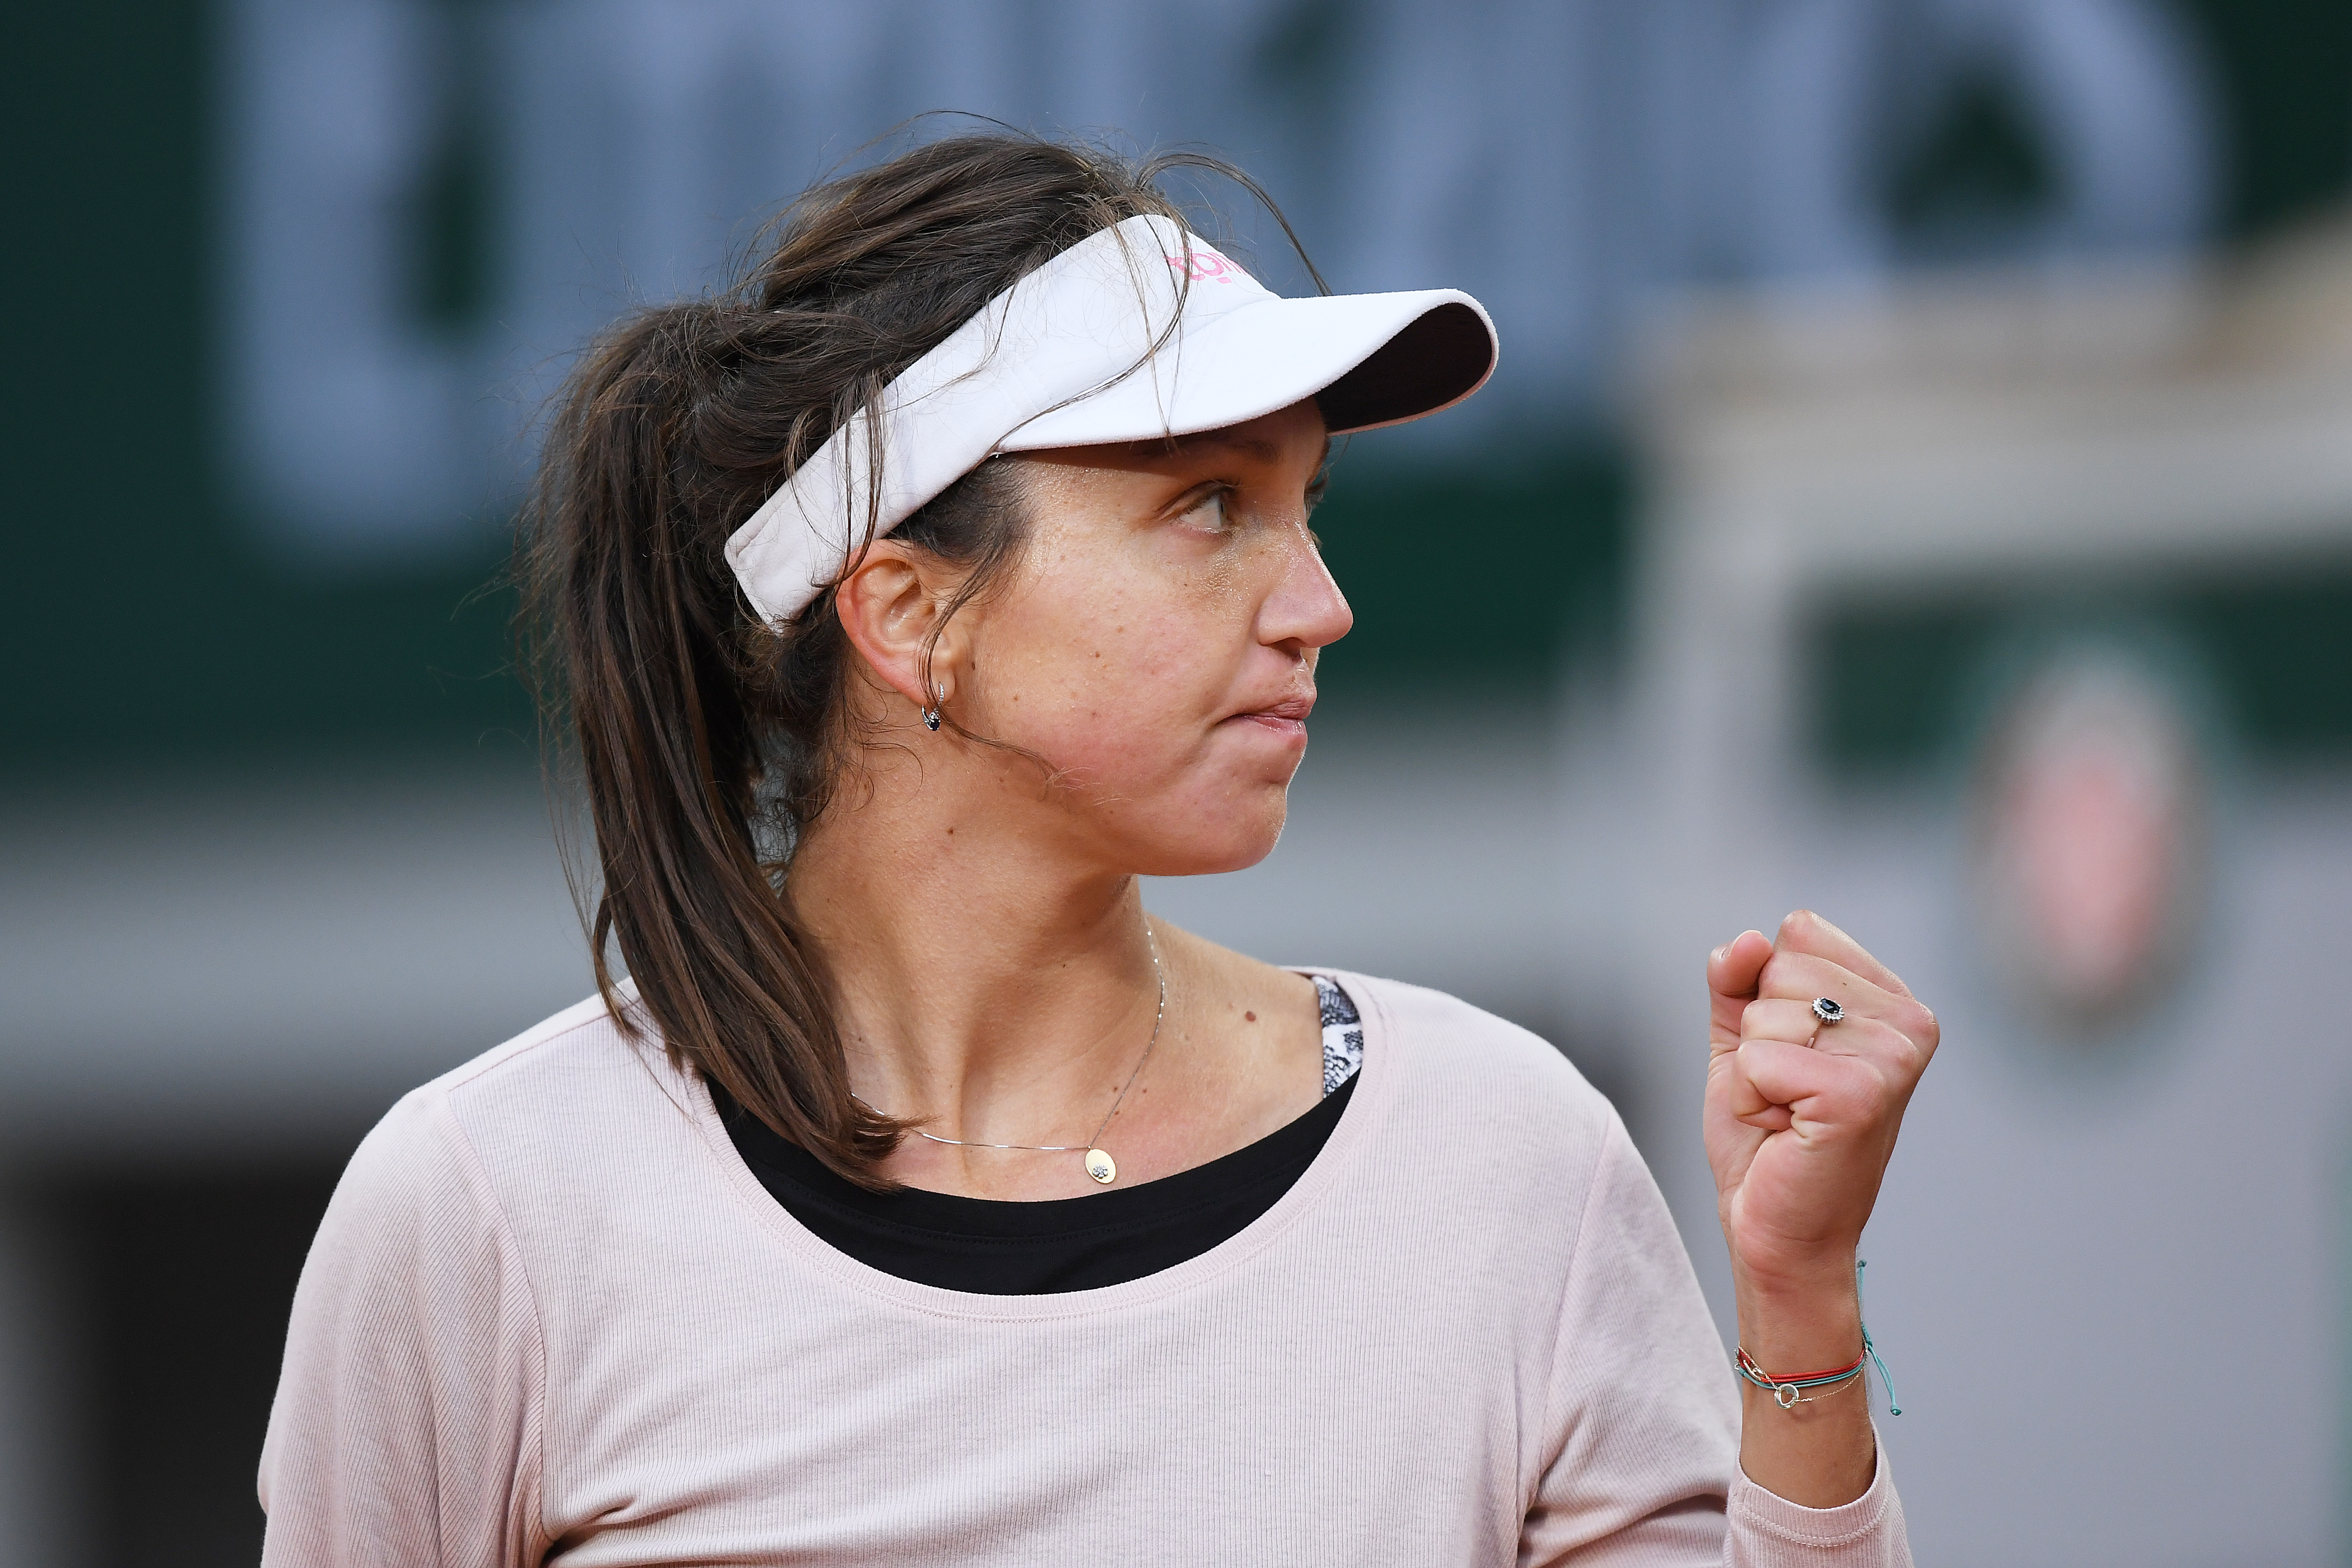 Patricia Țig - Julia Riera 2-6, 1-6, la WTA Lausanne. Toate rezultatele zilei